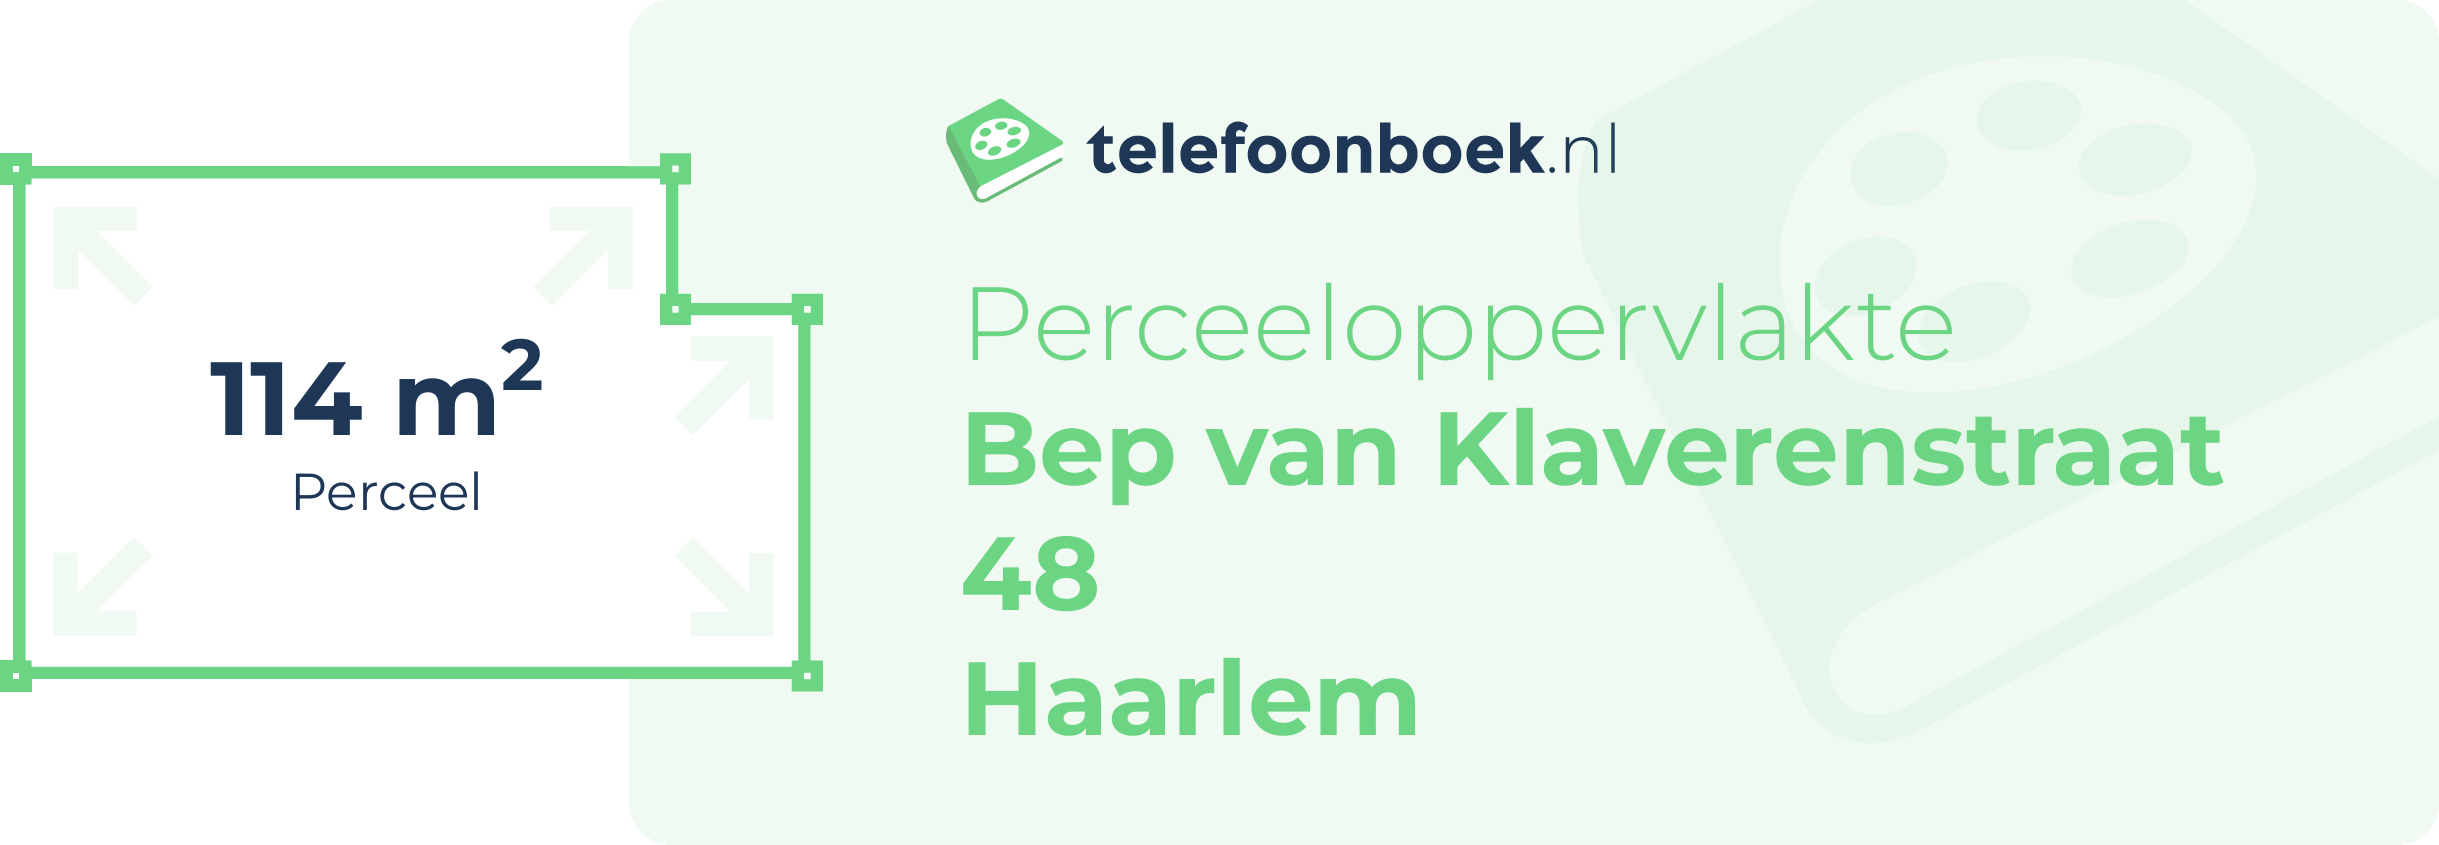 Perceeloppervlakte Bep Van Klaverenstraat 48 Haarlem